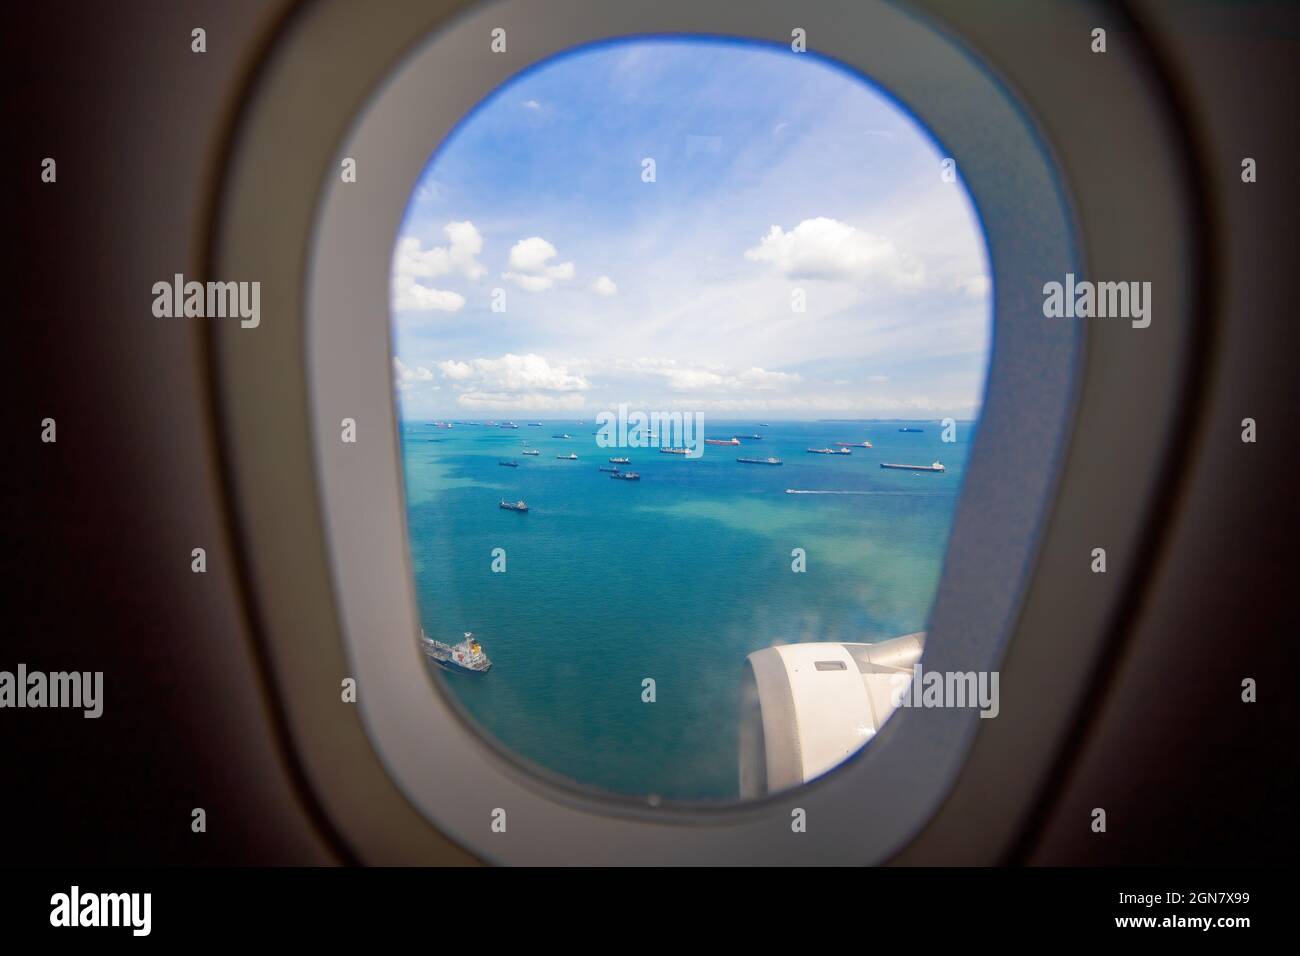 Schöne Aussicht vom Fenster des Flugzeugs auf das Meer und Frachtschiffe. Unbeschwerte Aussicht vom Bullauge Landungsflugzeug Stockfoto